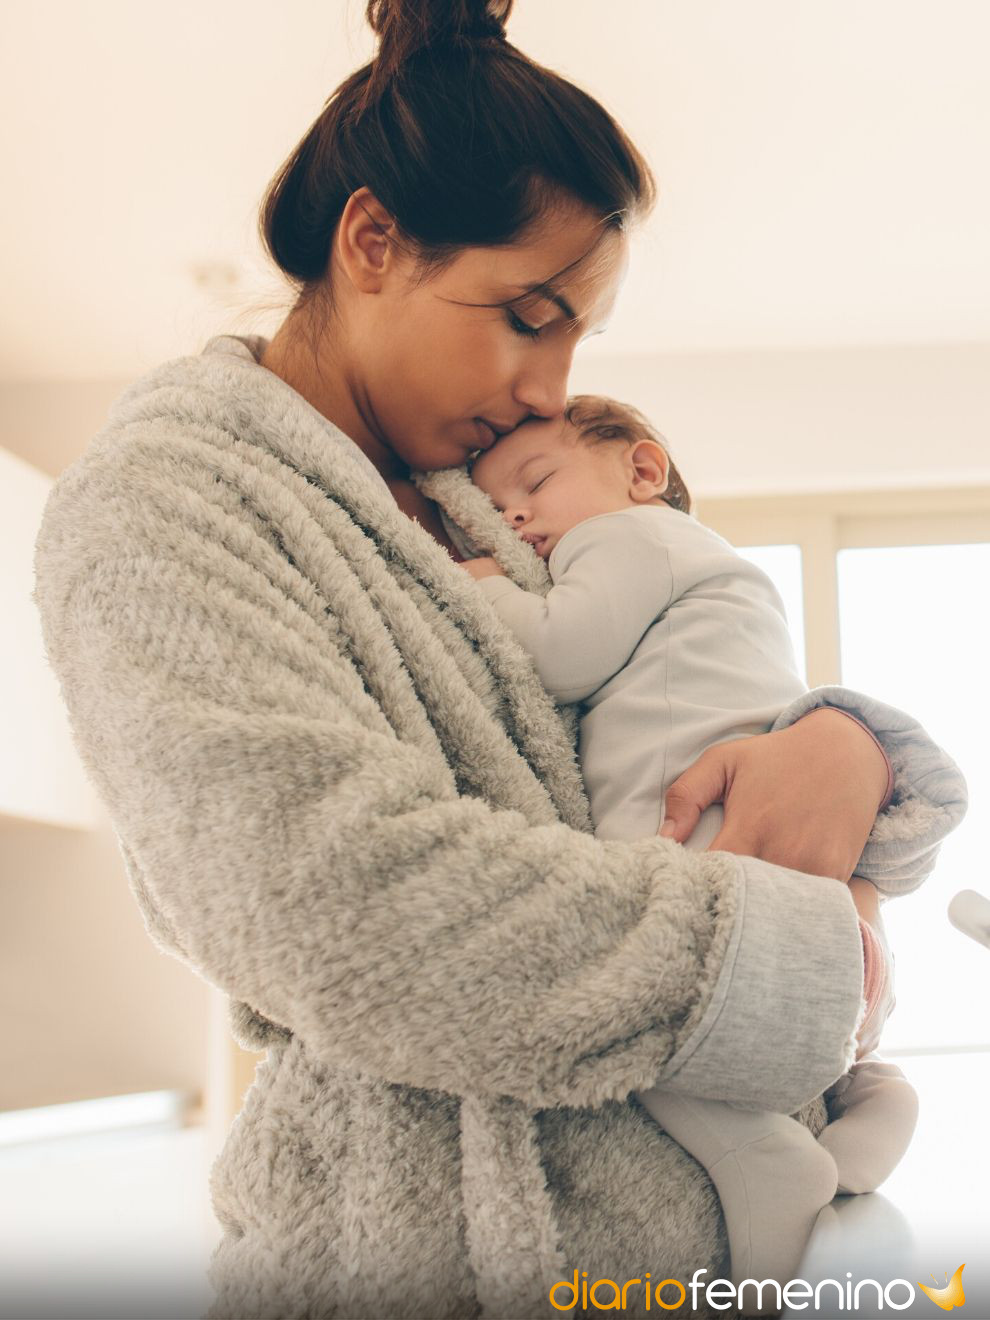 Qué significa bebé en brazos: cuida tus proyectos